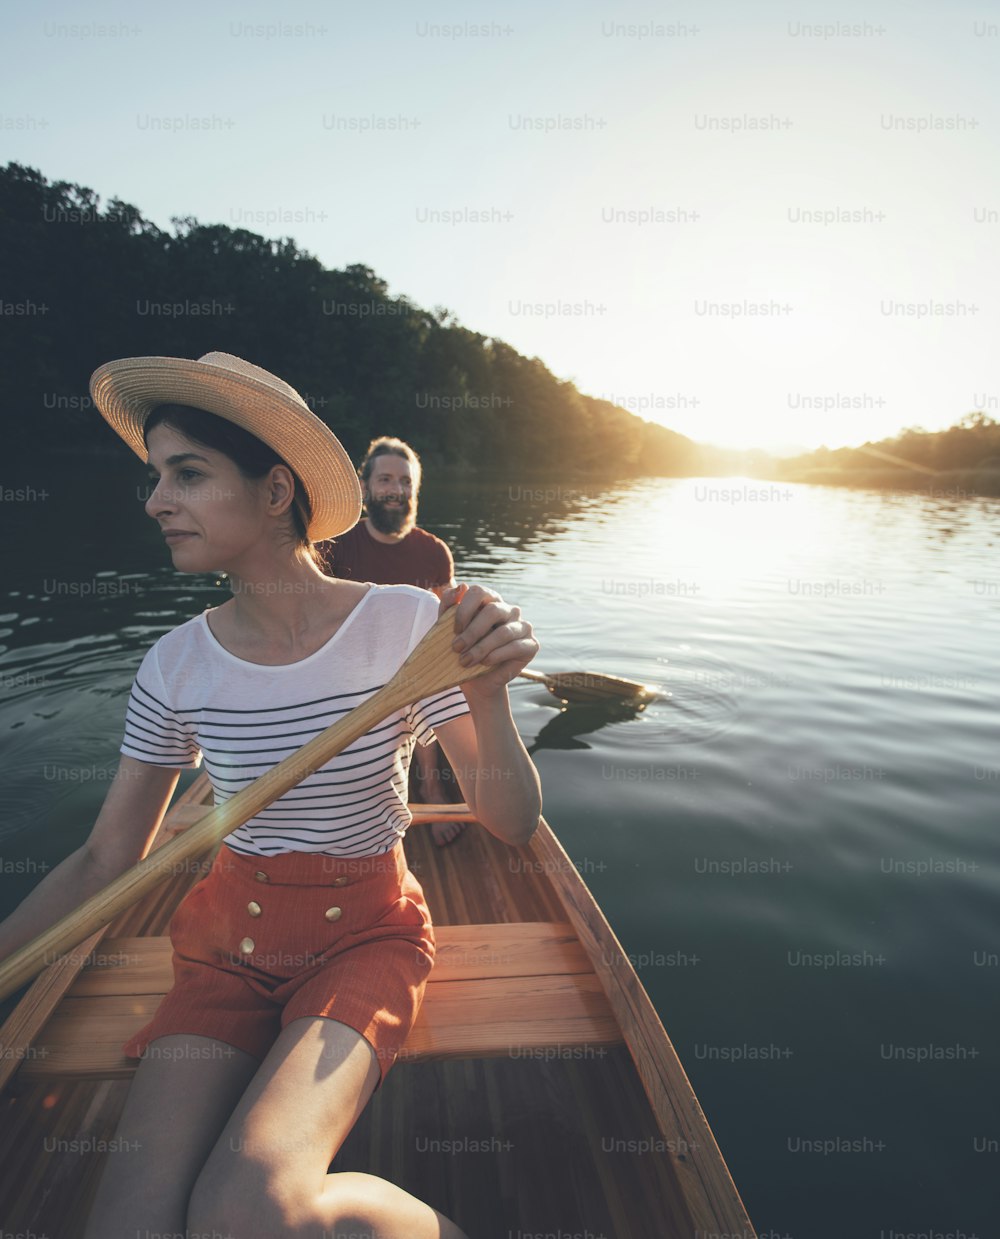 Paare paddeln Kanu auf dem Sonnenuntergangssee. Frau und Mann auf einer gemütlichen Bootsfahrt.